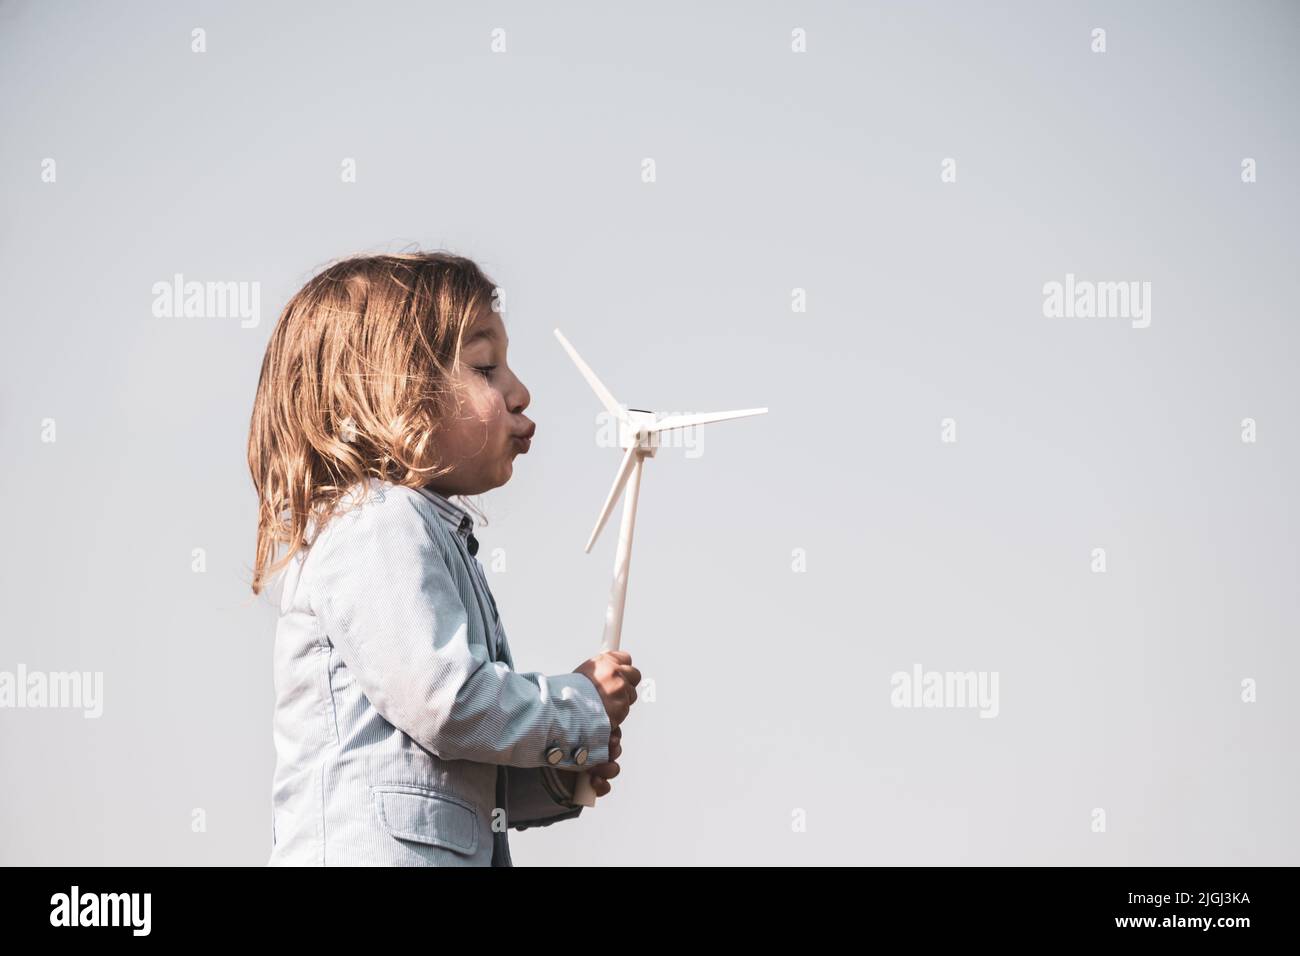 Gros plan d'un petit garçon soufflant un jouet d'éolienne et étudiant comment l'énergie verte fonctionne à partir d'un jeune âge - concept de la génération future et enewable Ener Banque D'Images